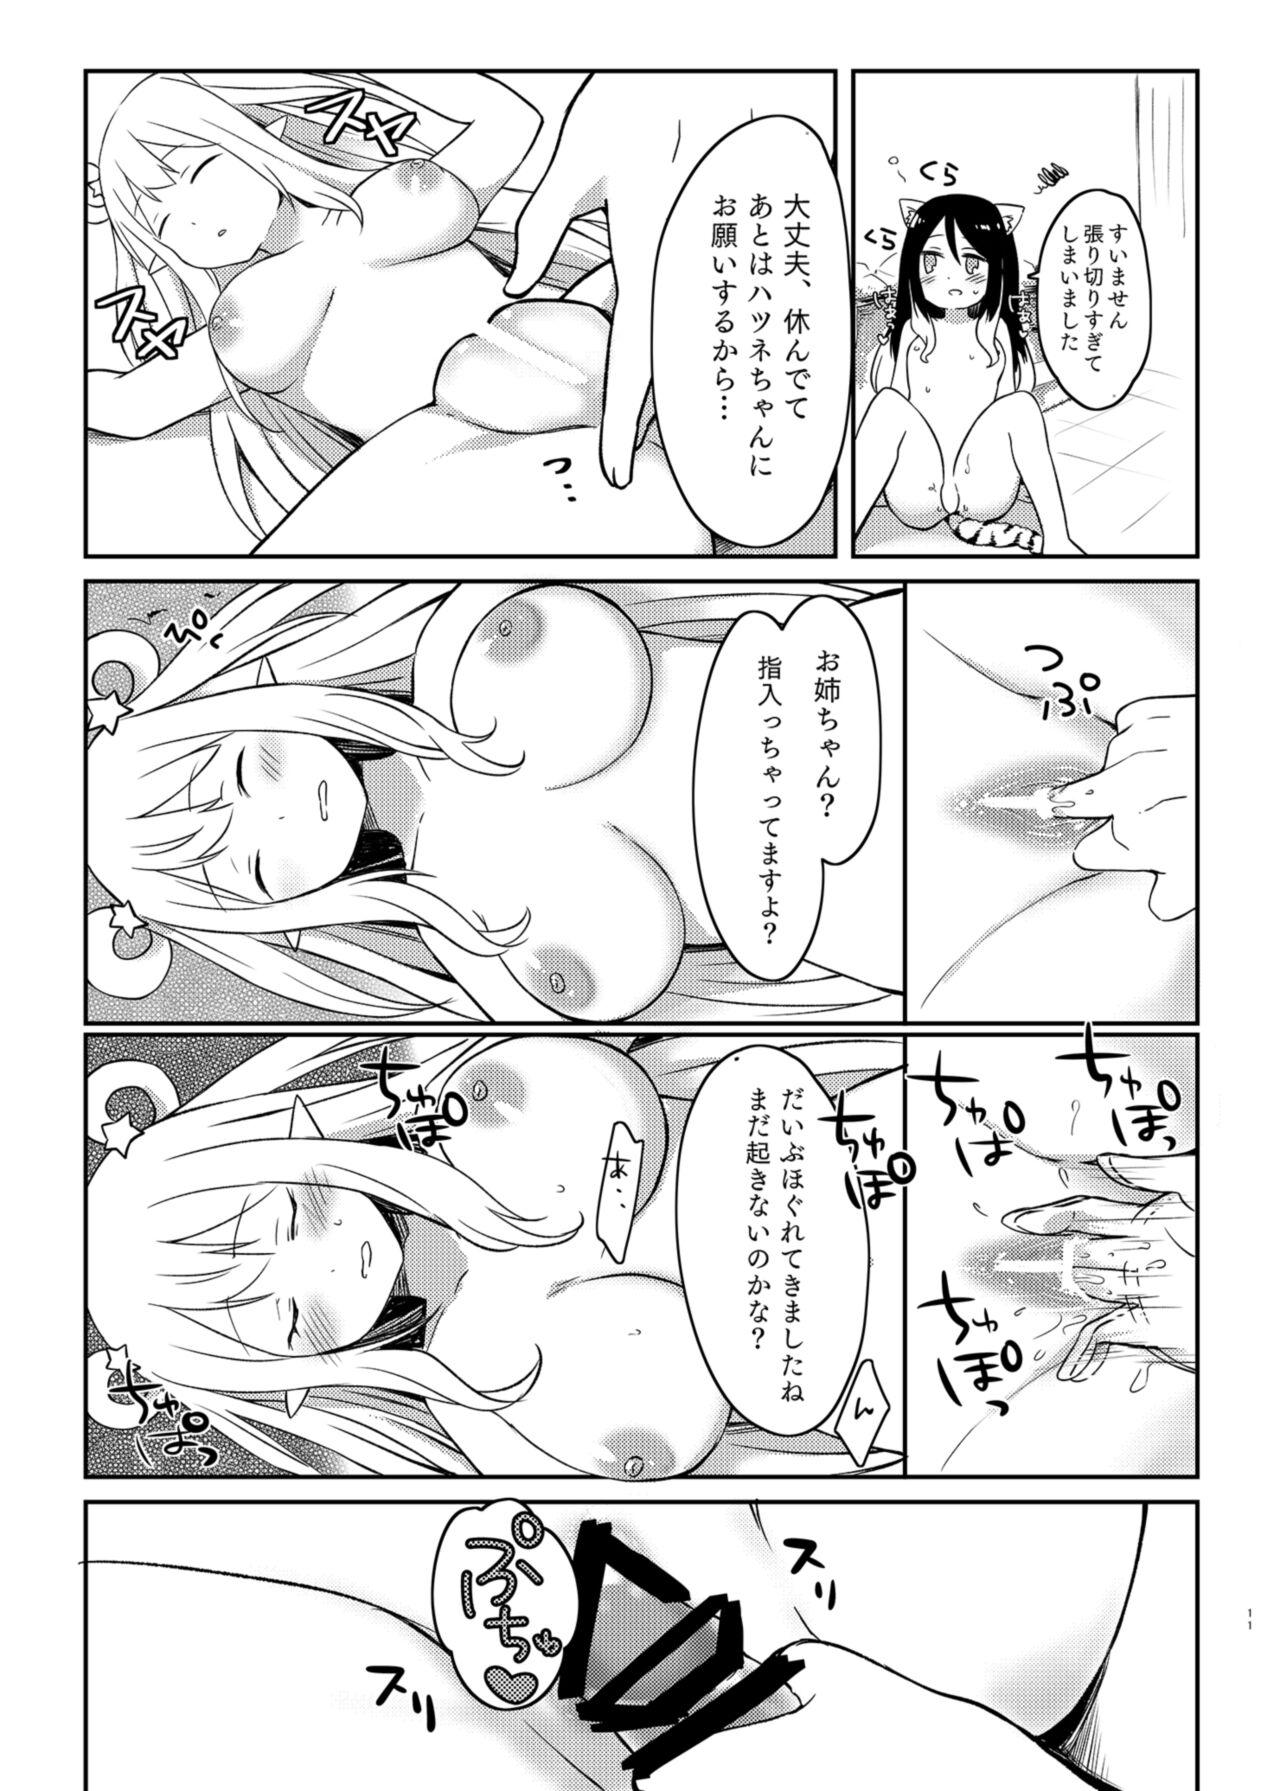 Fitness Hatsune to Shiori no Yukemuri Daisakusen - Princess connect Fingering - Page 11